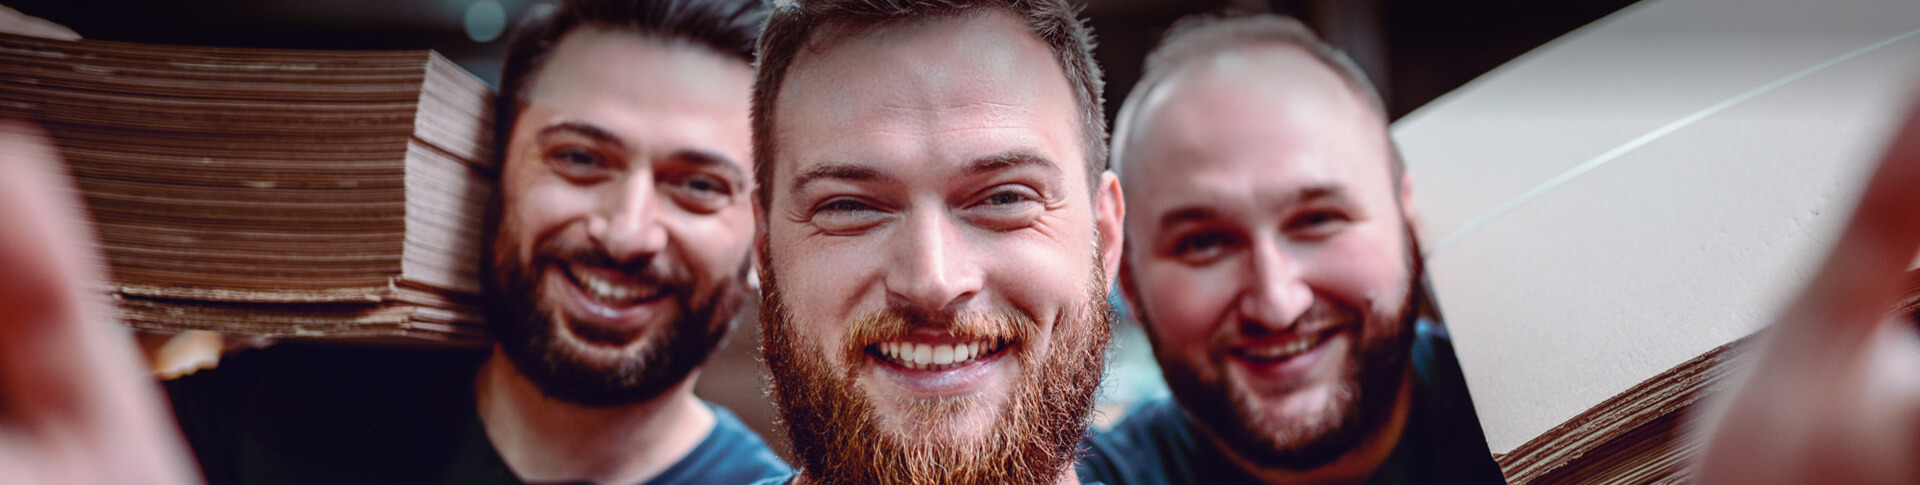 3 Männer mit Bart machen Selfie